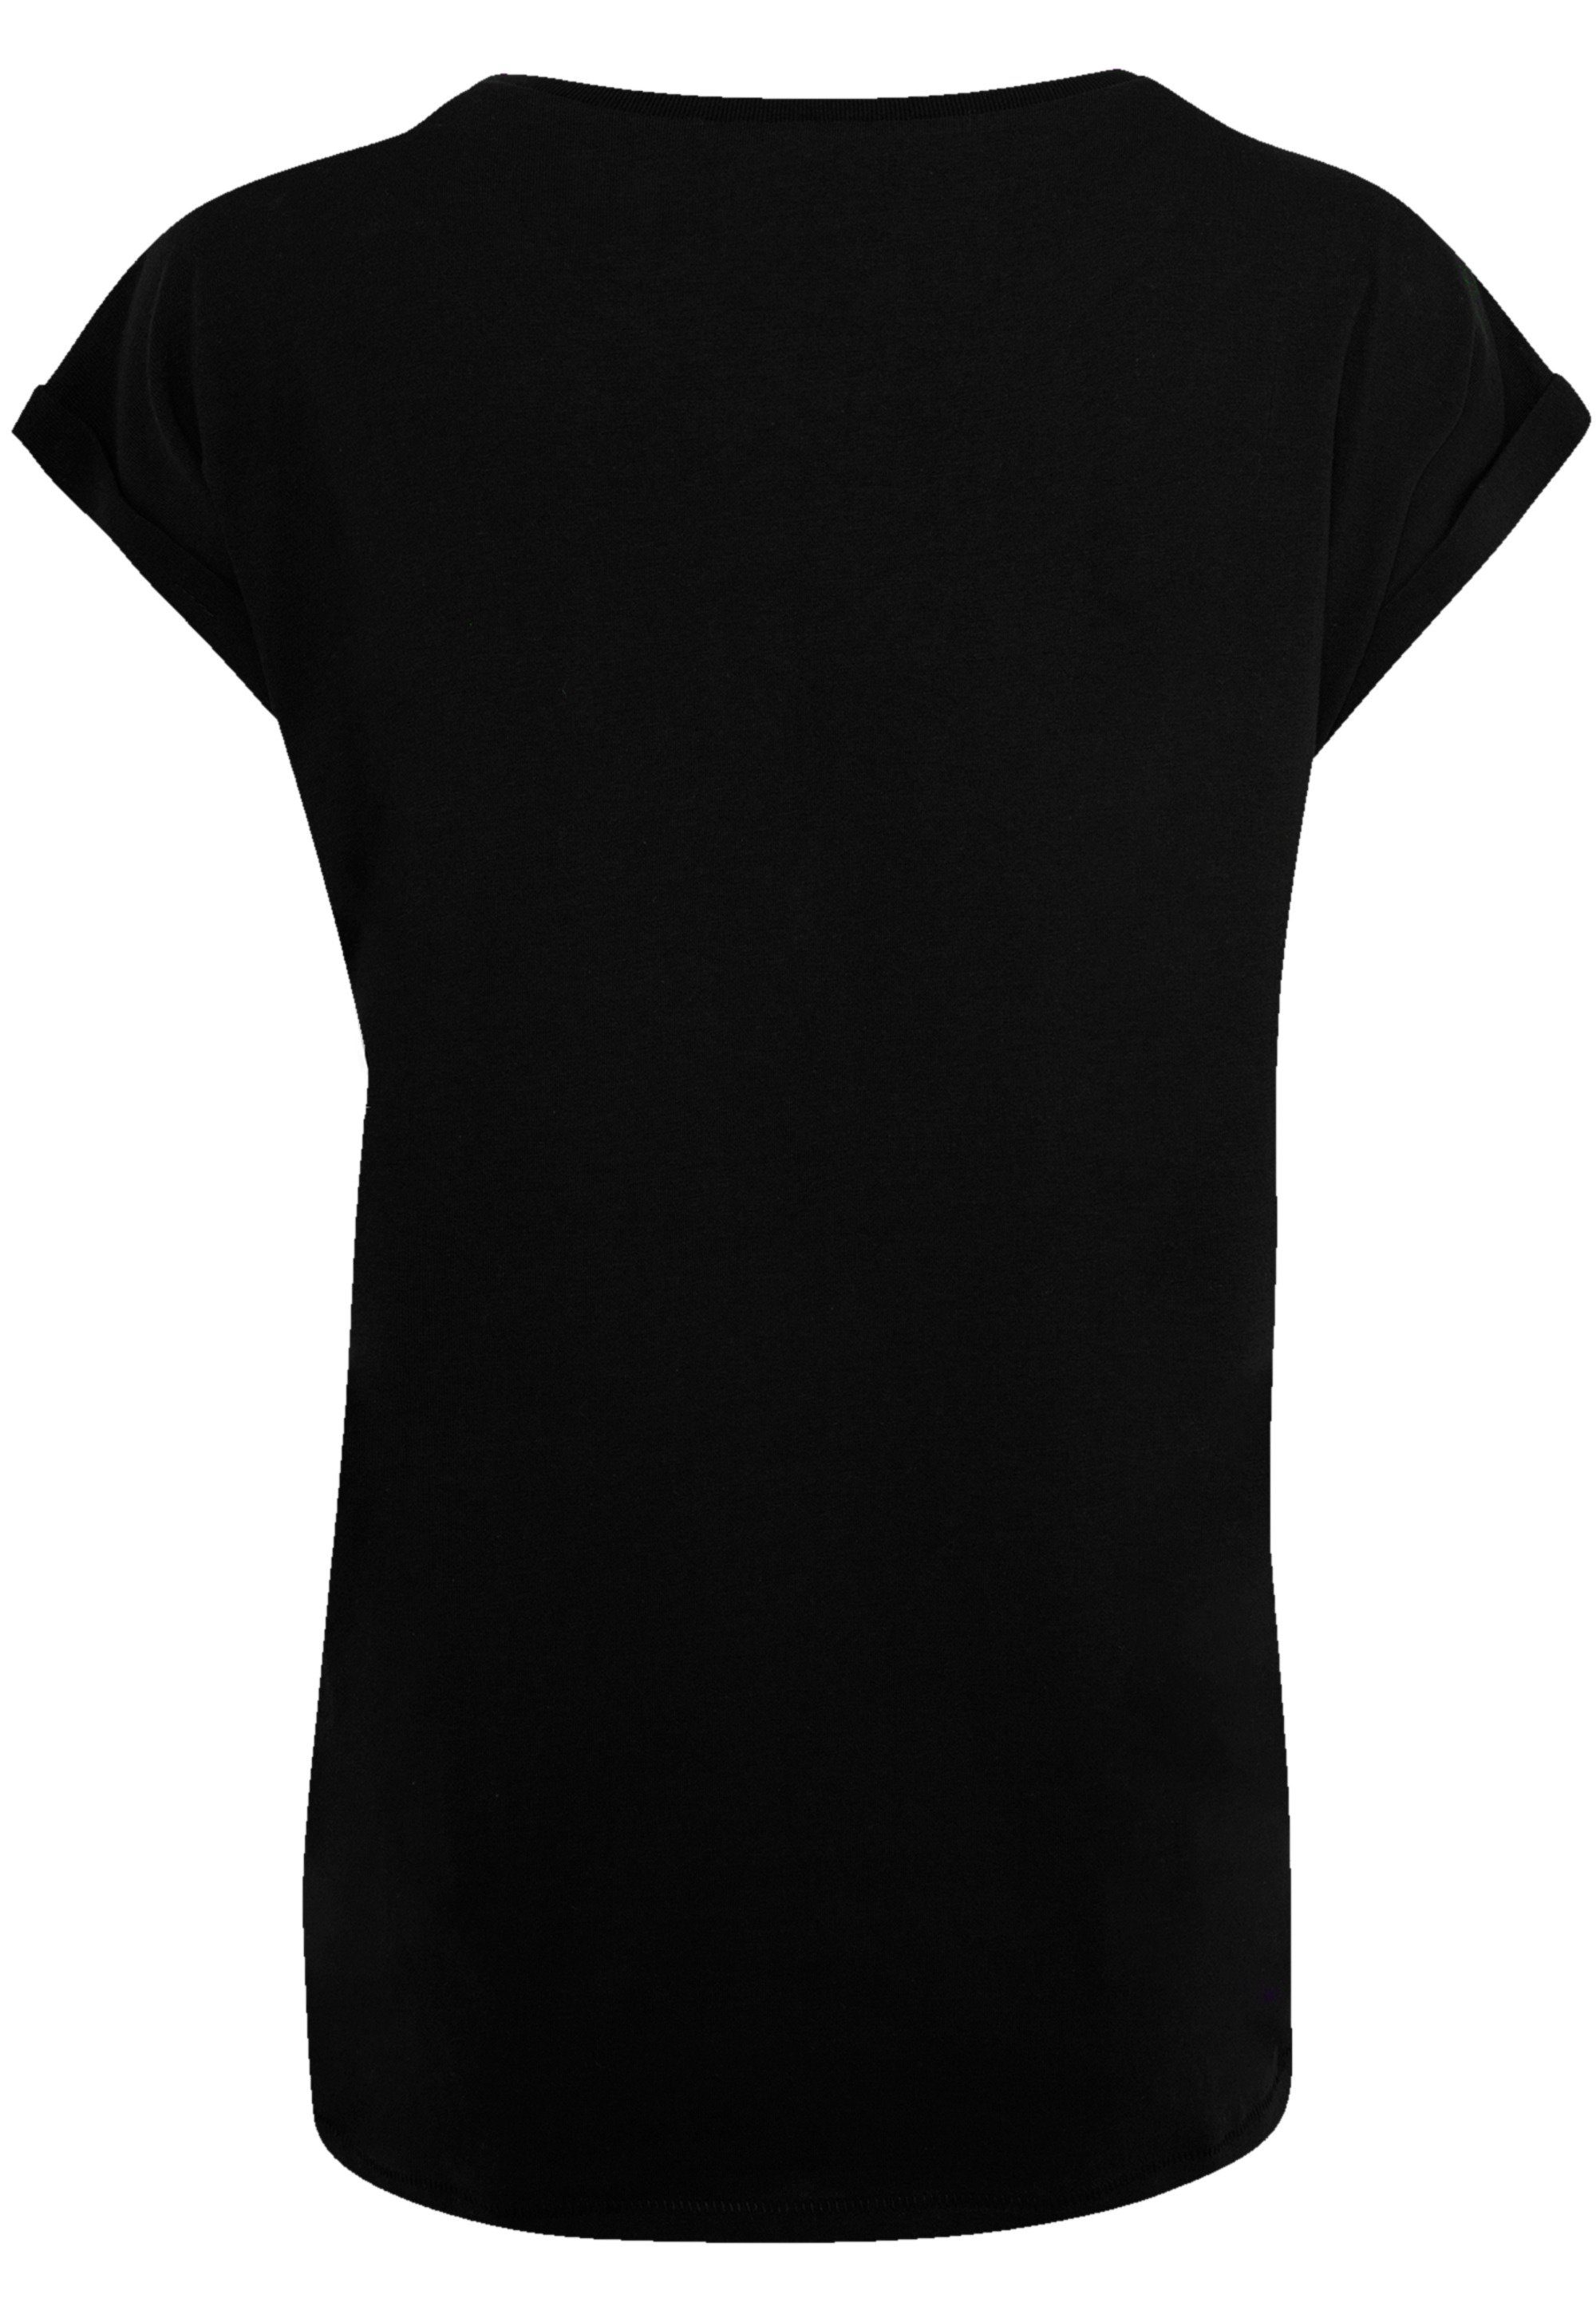 F4NT4STIC T-Shirt Kiss Hard Rock Kiss Offiziell Band lizenziertes Premium Demon Qualität, T-Shirt